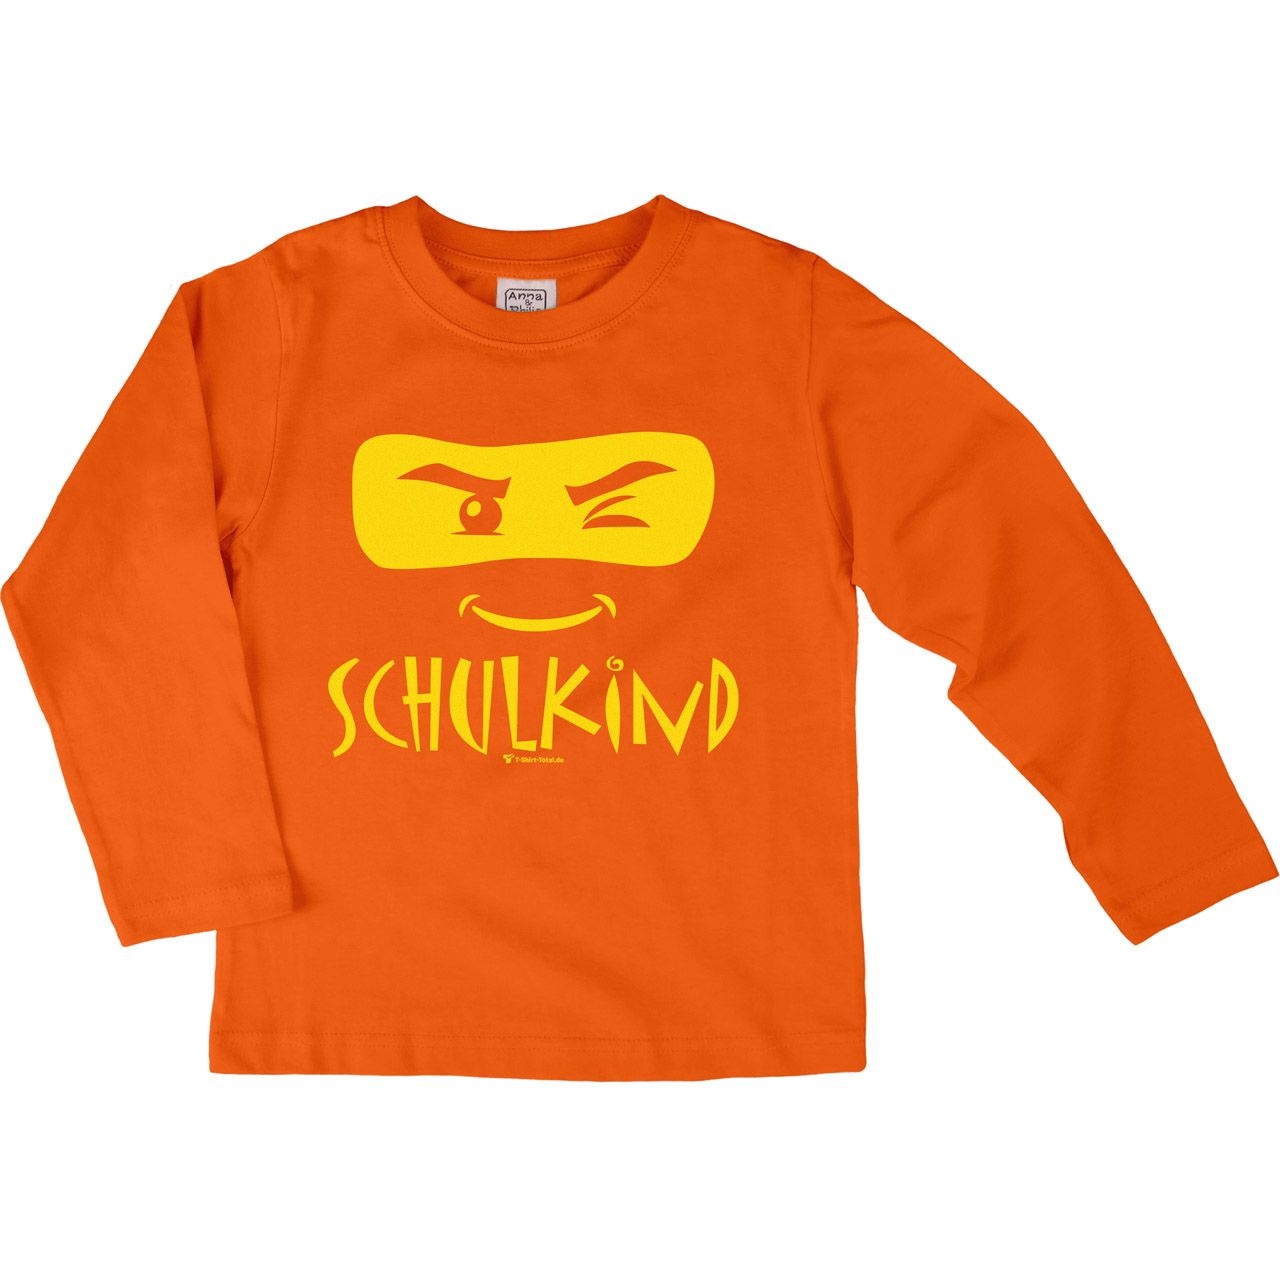 Schulkind Maske Kinder Langarm Shirt orange 122 / 128